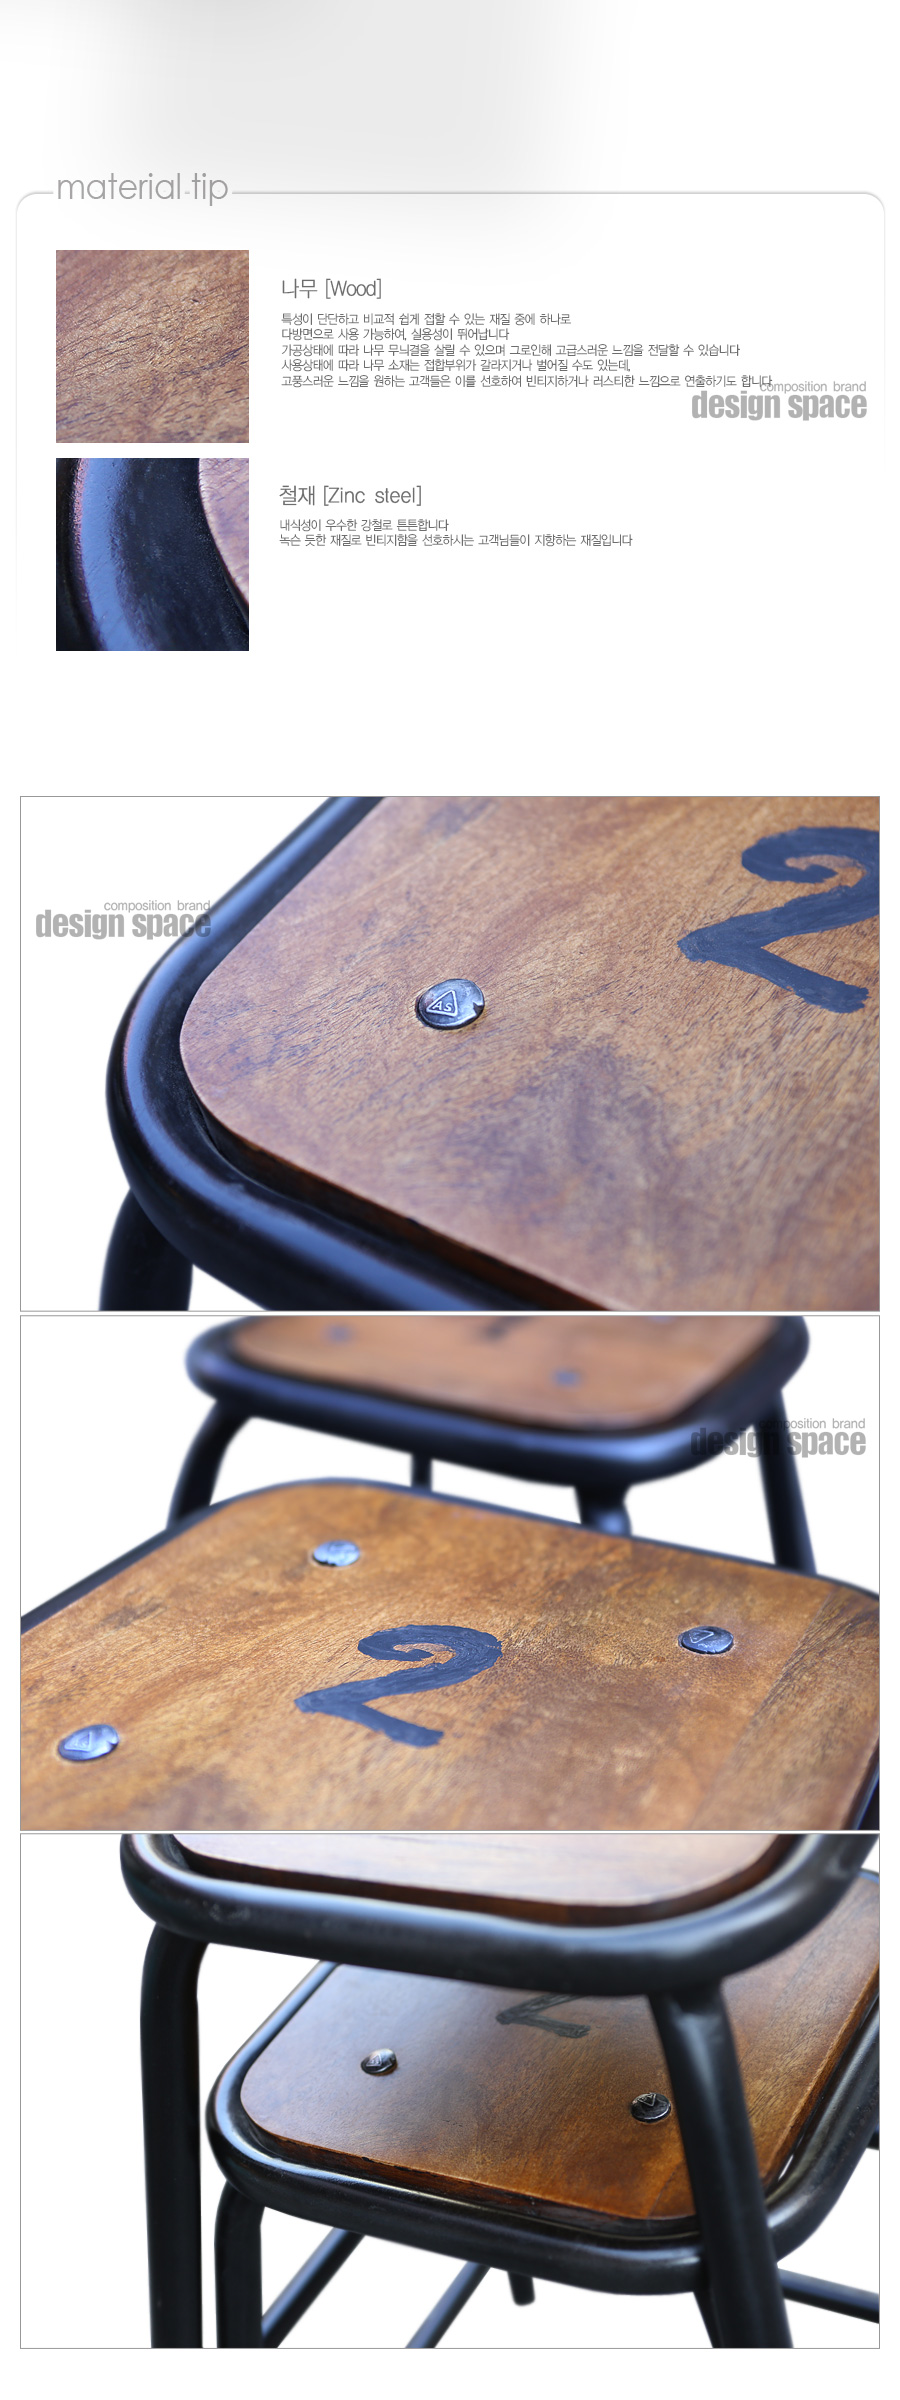 bedo-stool_03.jpg